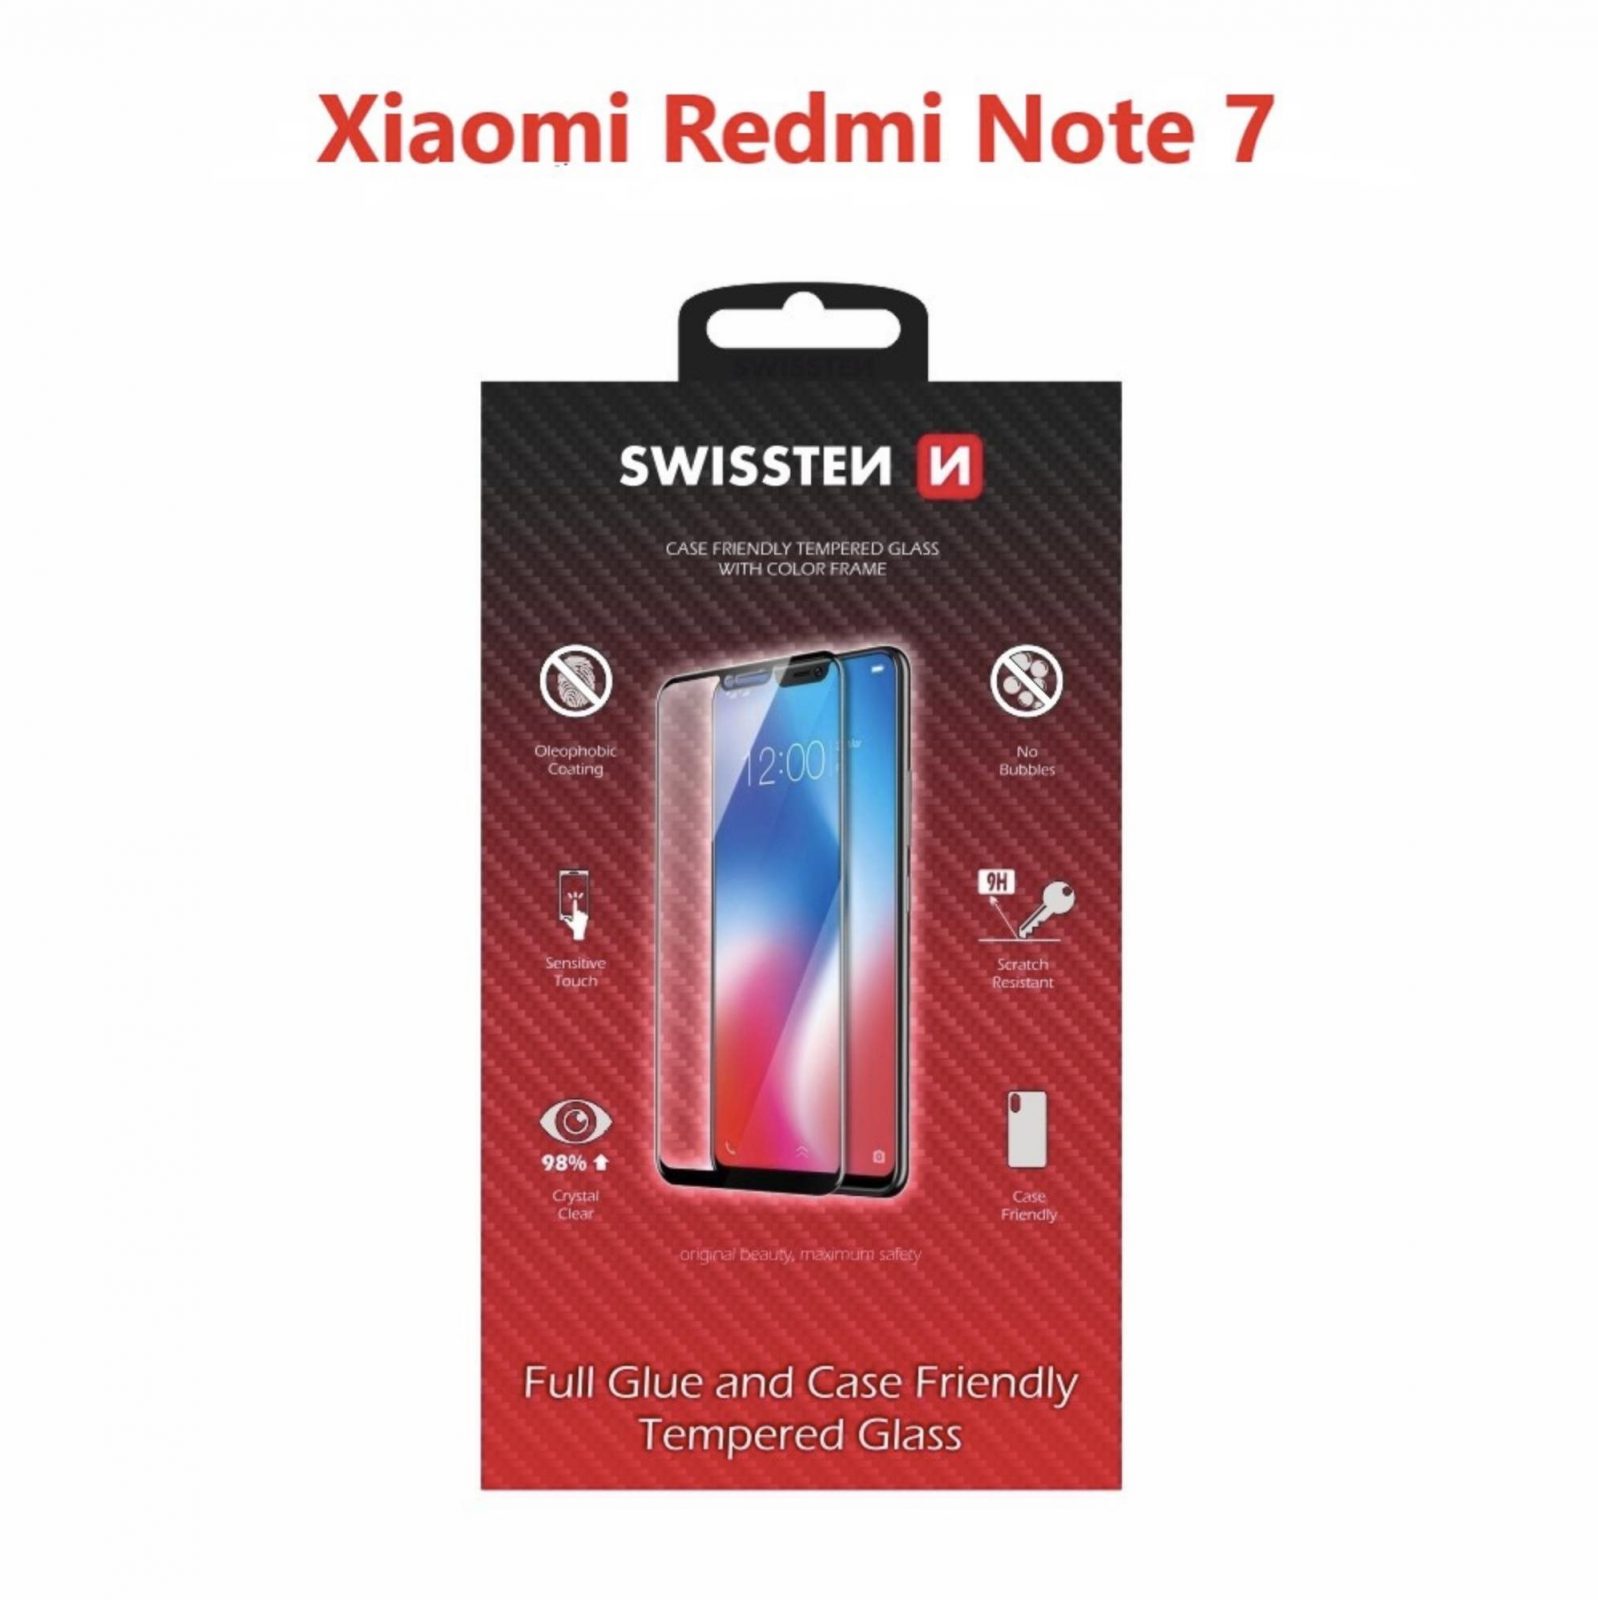 Üvegfólia Swissten Case Friendly a Xiaomi Redmi Note 7 készülékhez - fekete